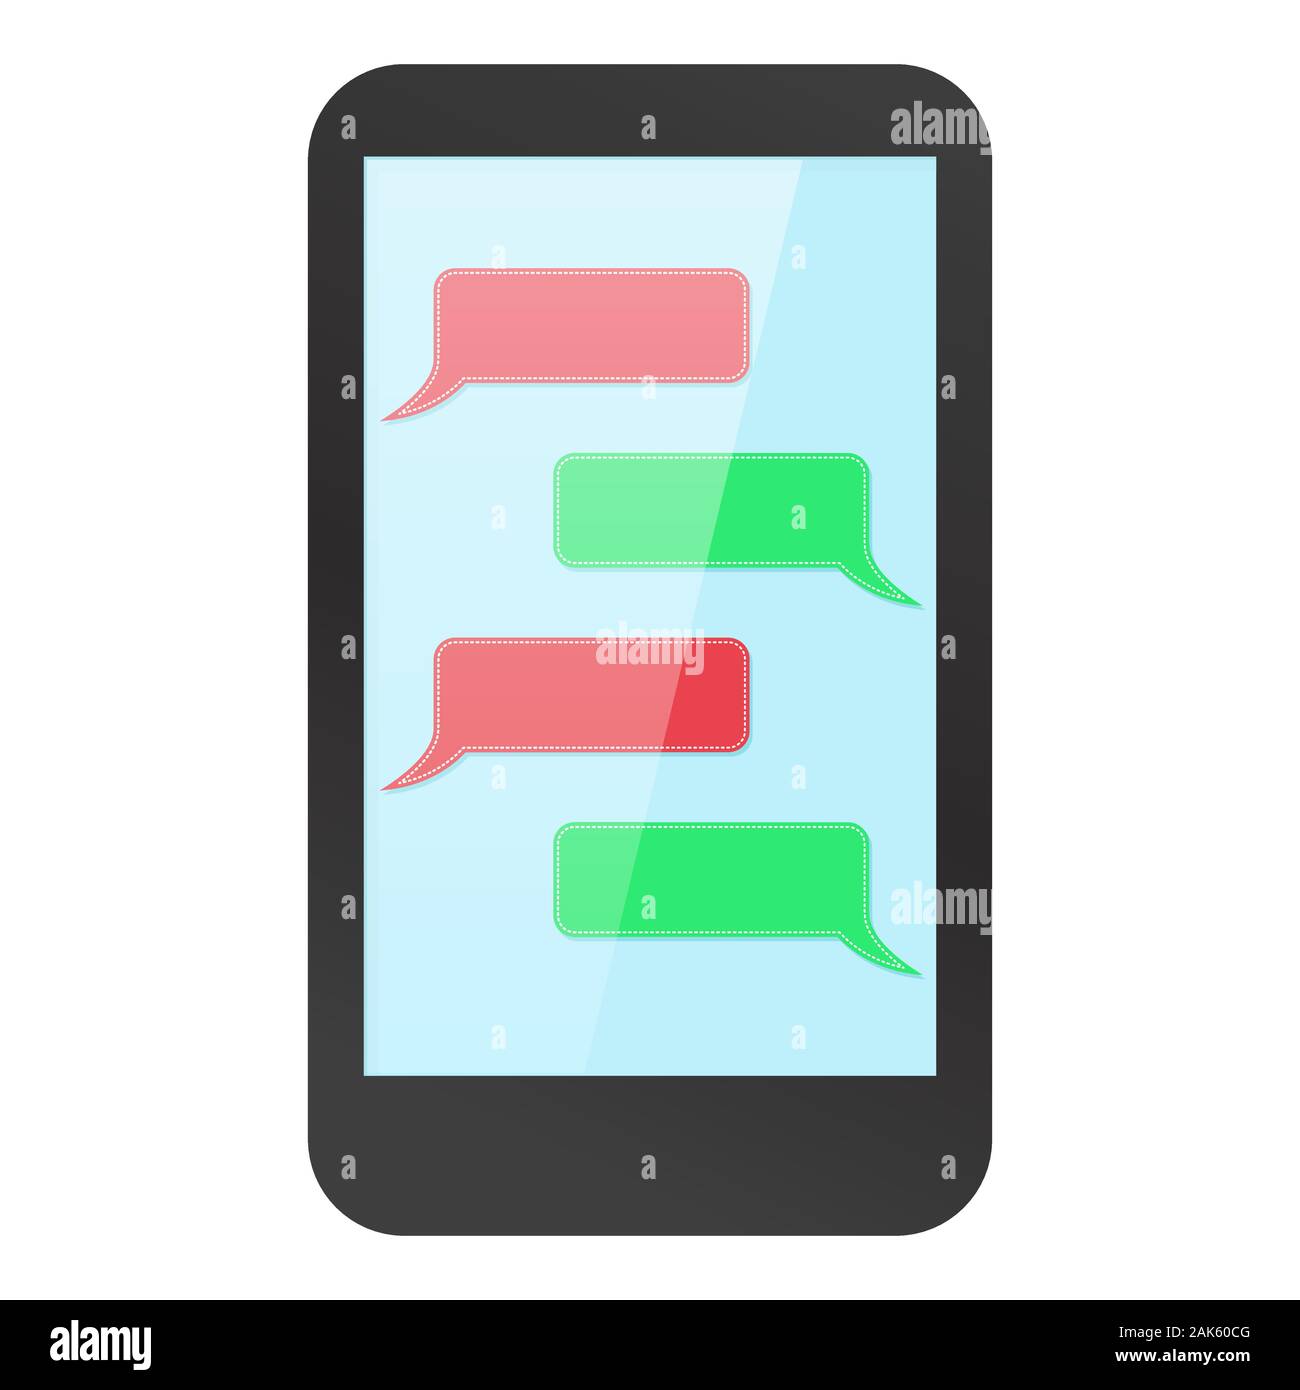 Maquette du Smartphone avec messenger sur l'affichage. Dialogue vierge rouge et vert Illustration de Vecteur